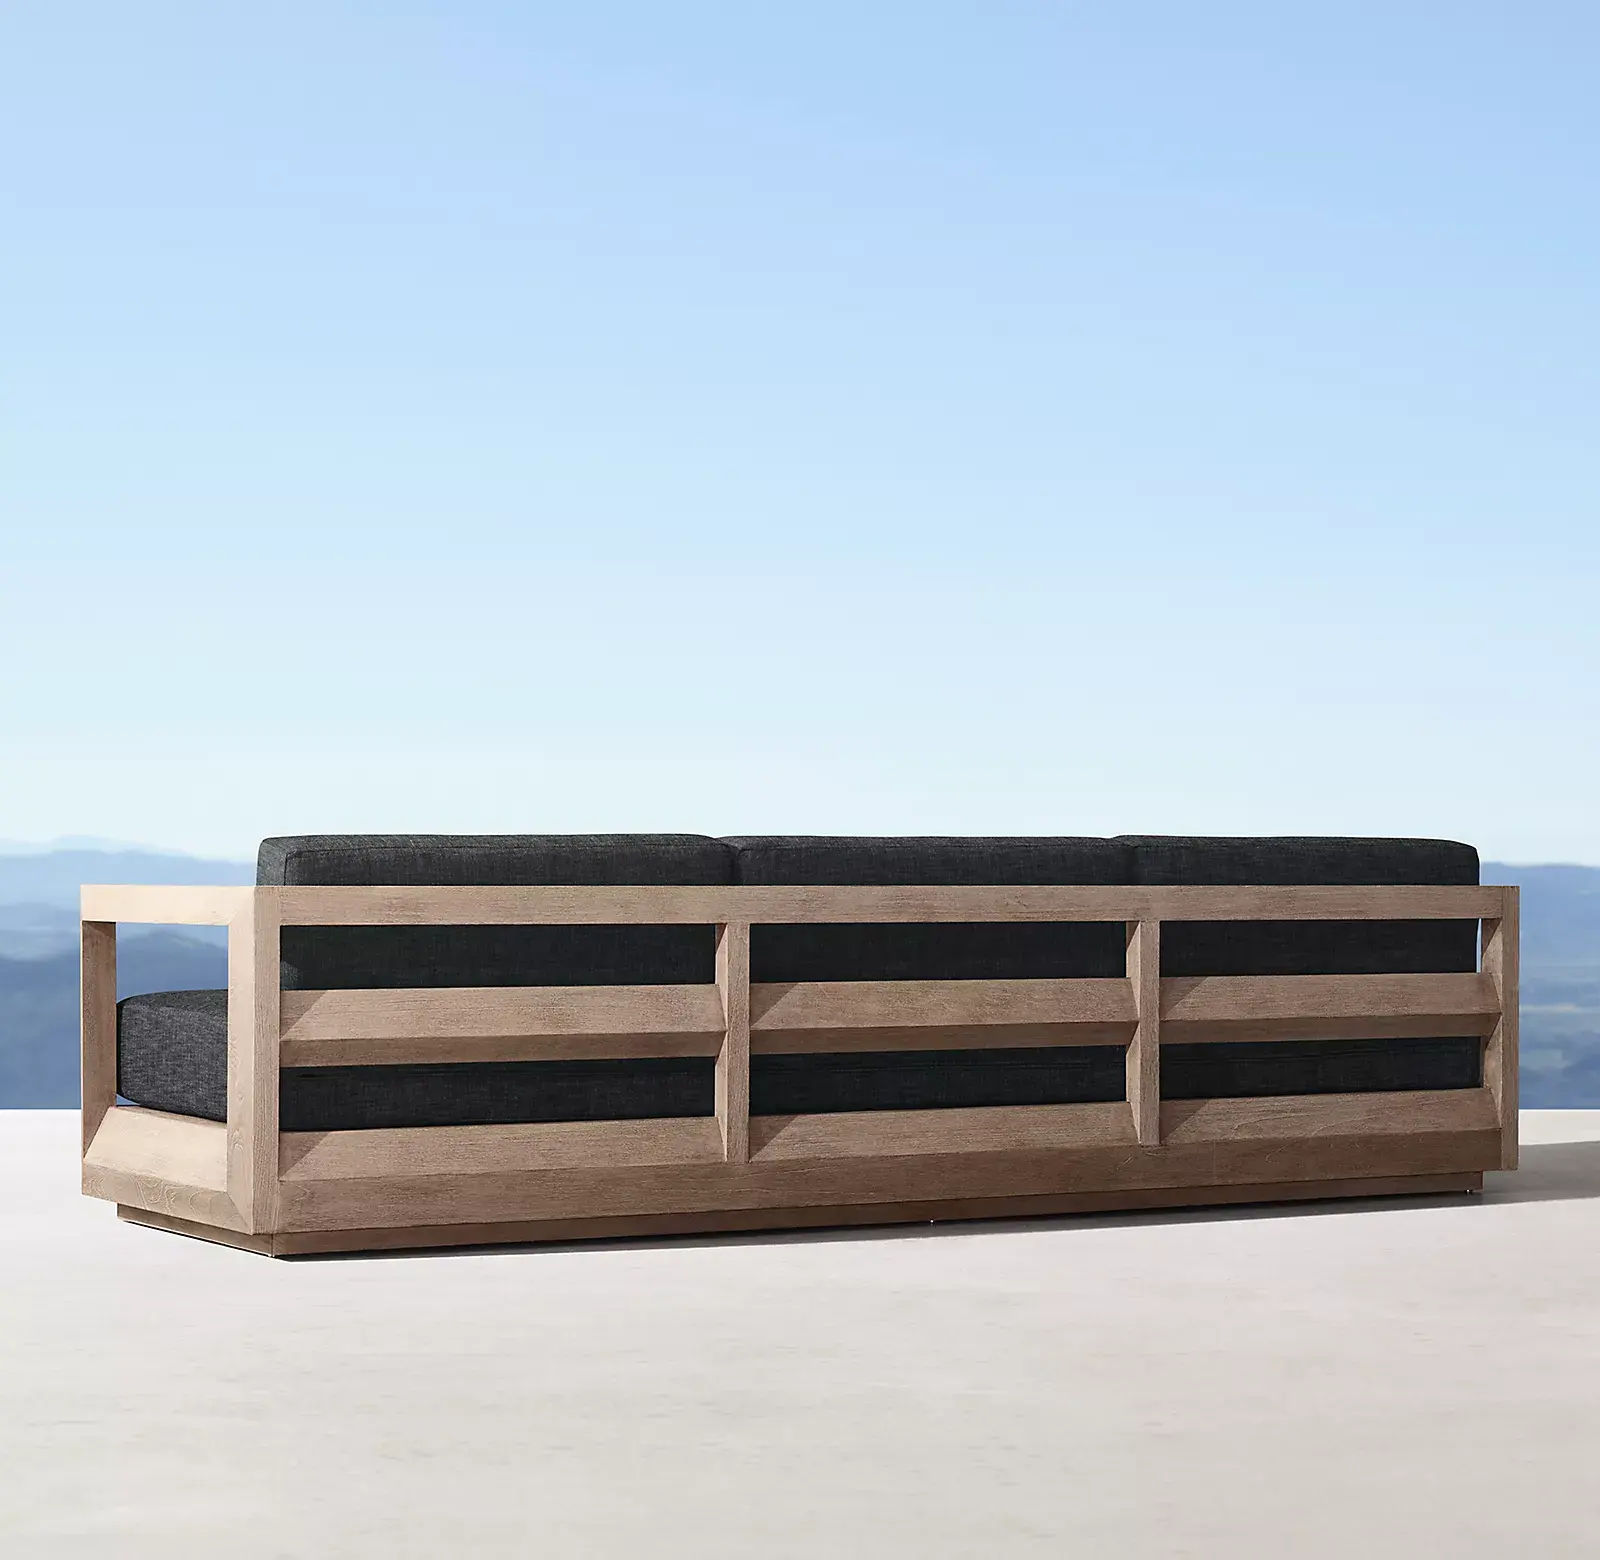 Modernes Luxus-Schwimmbad Teak Gartenmöbel Set Patio Schnitt Holz Gartenmöbel Sofa Set